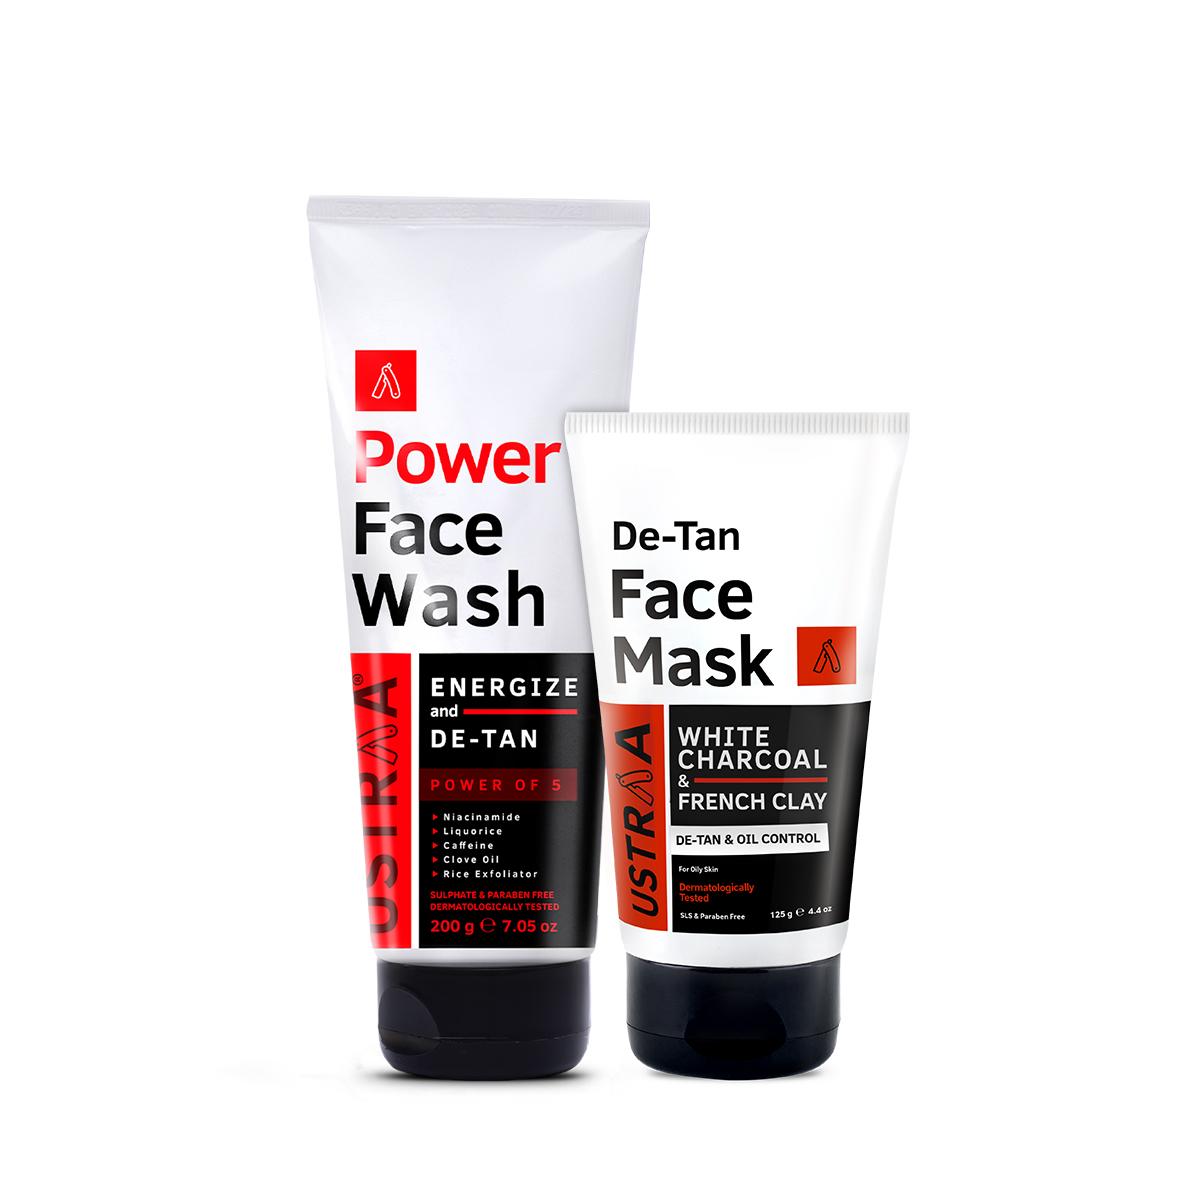 Power Face Wash Energize & De-Tan Face Mask - Oily Skin